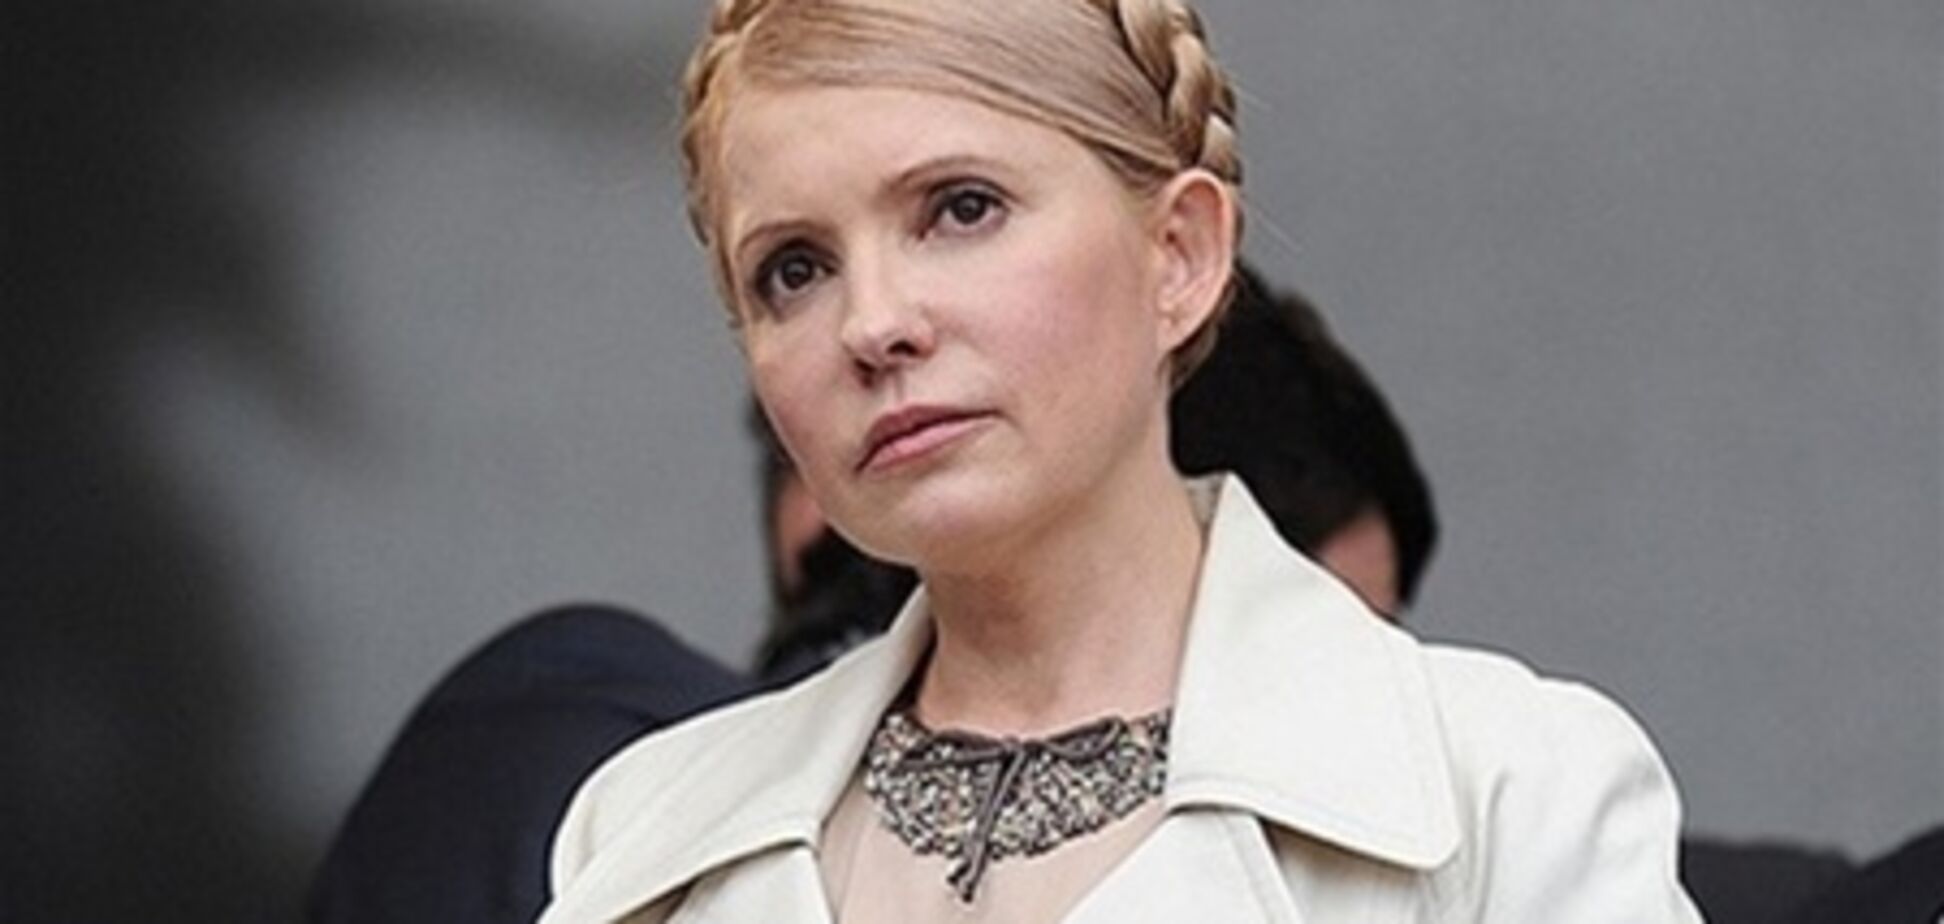 Тимошенко вийде з в'язниці через півроку - адвокат